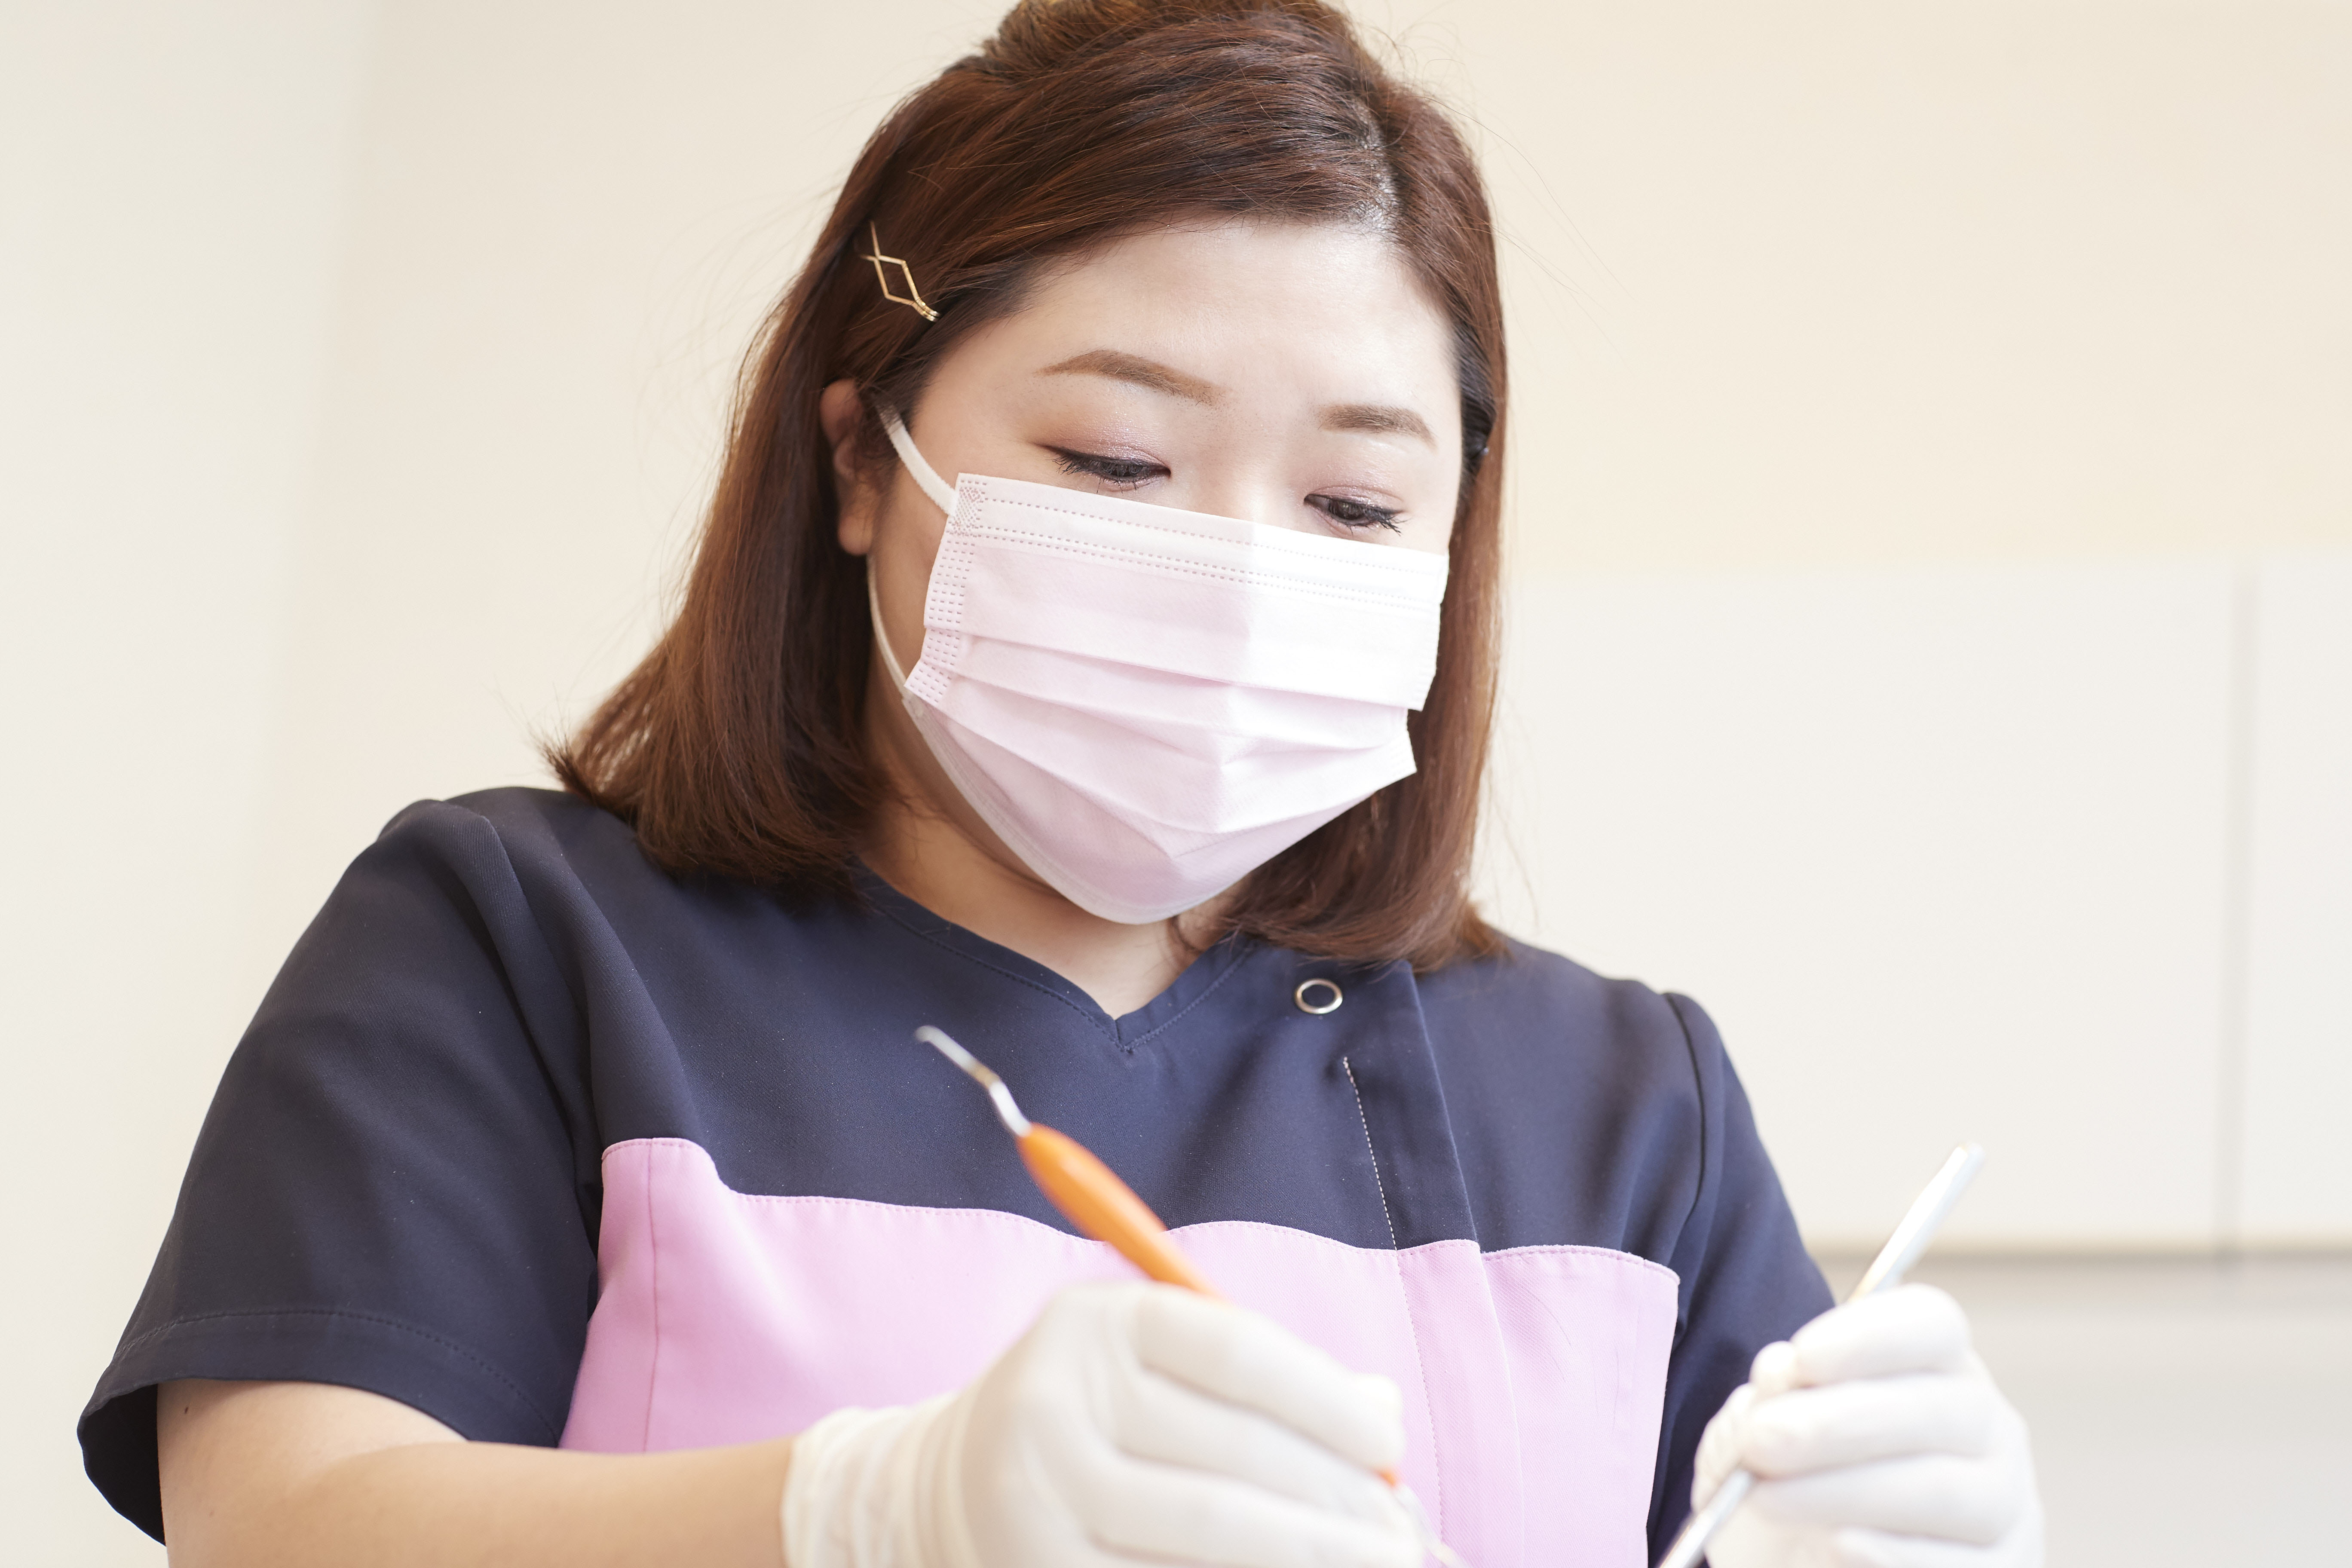 歯石とり（歯石除去）|歯石除去・歯石とりなら神戸三宮谷歯科クリニック